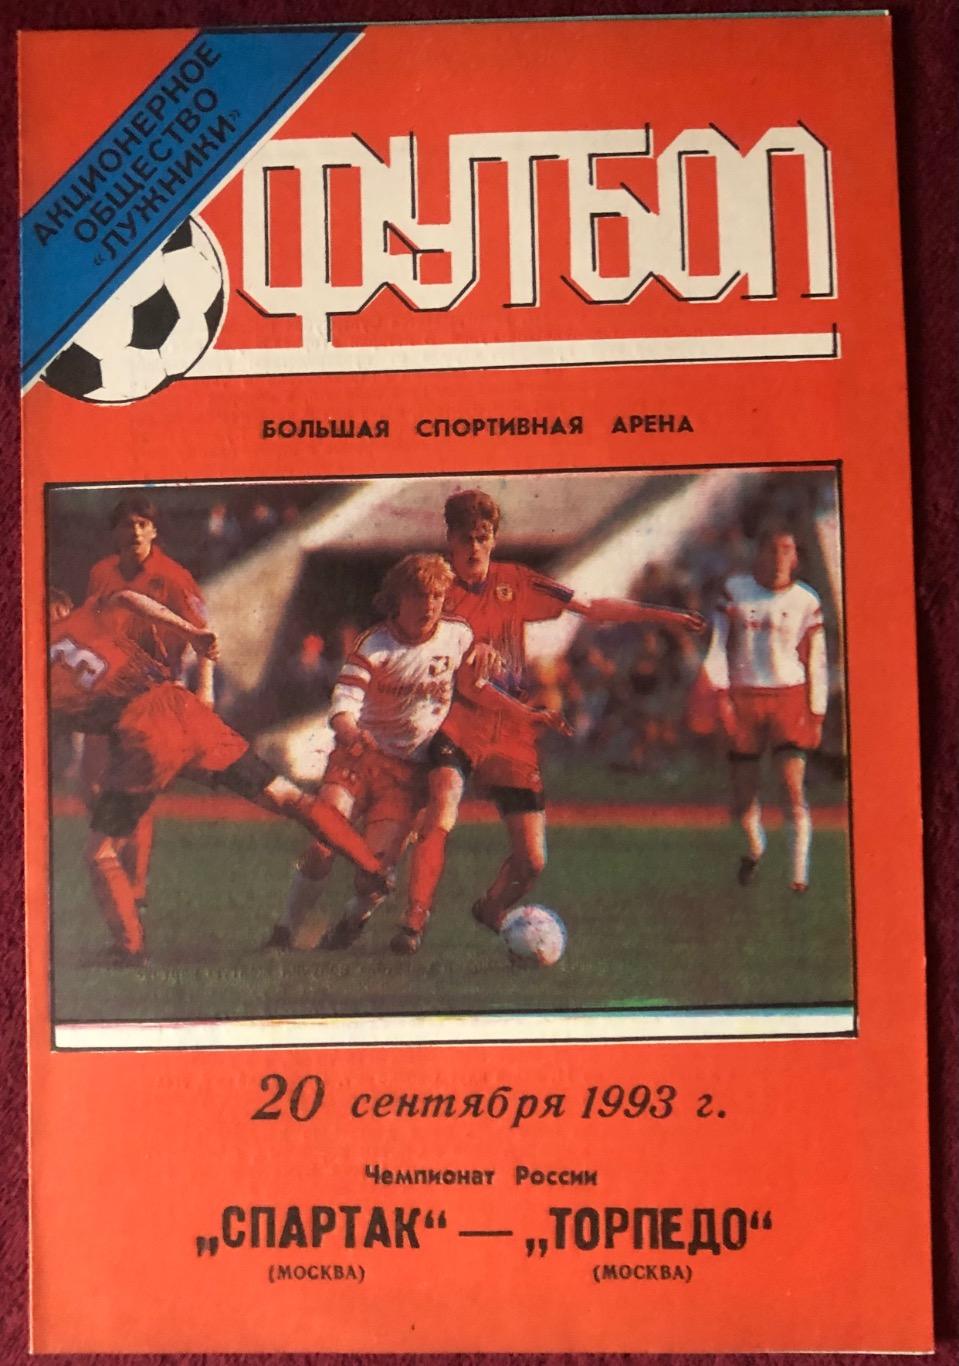 Спартак Москва - Торпедо Москва, 20.09.1993